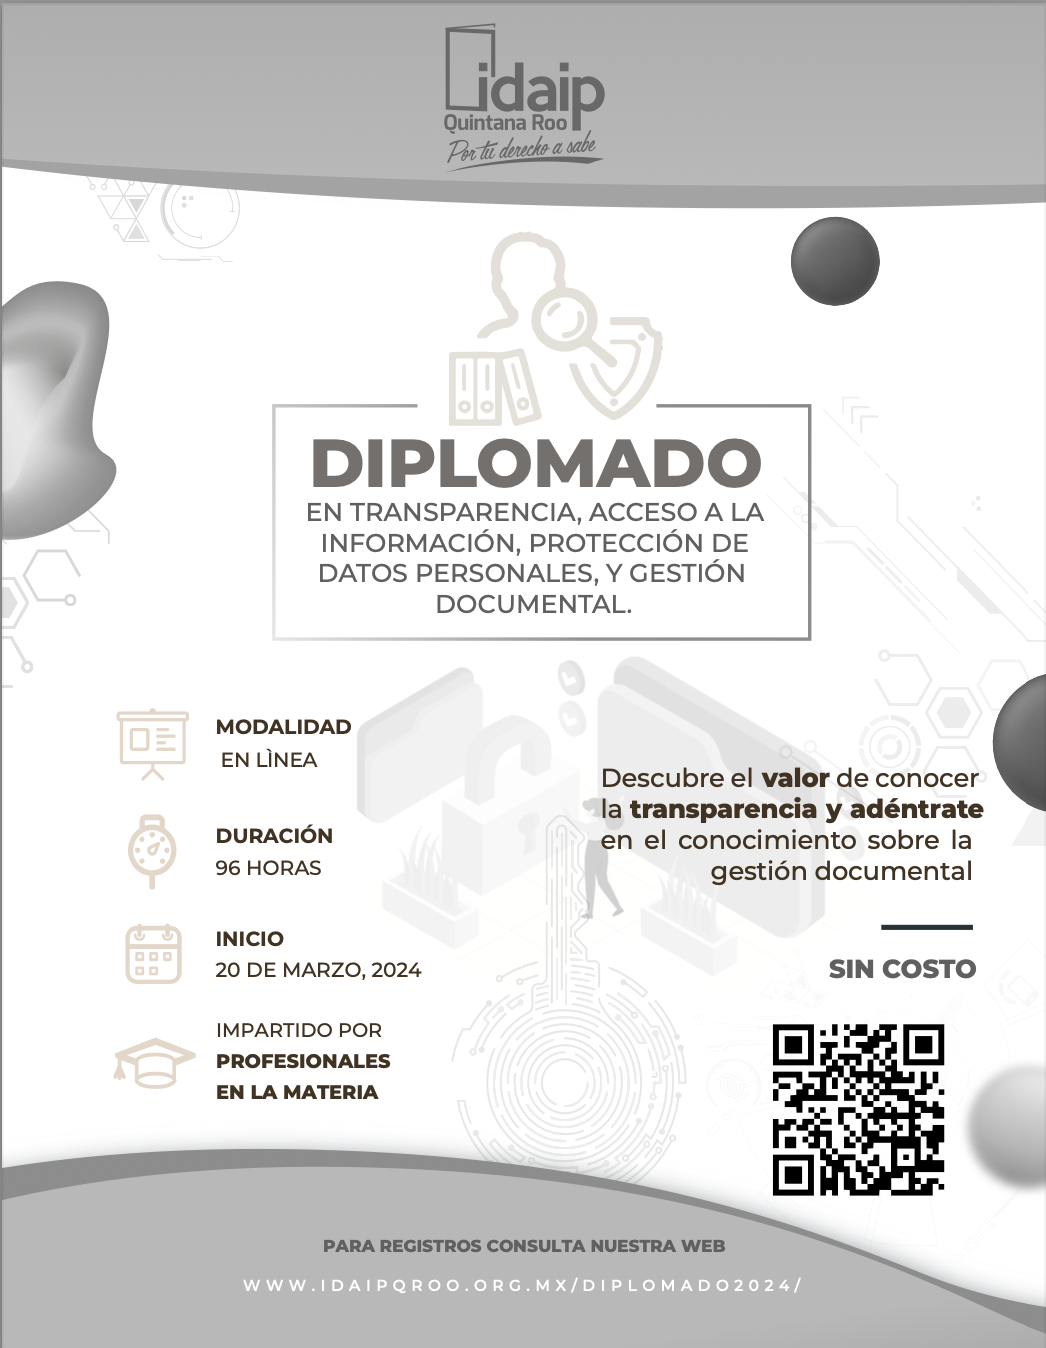 IDAIPQROO emite convocatoria para la segunda edición del diplomado en transparencia y acceso a la información